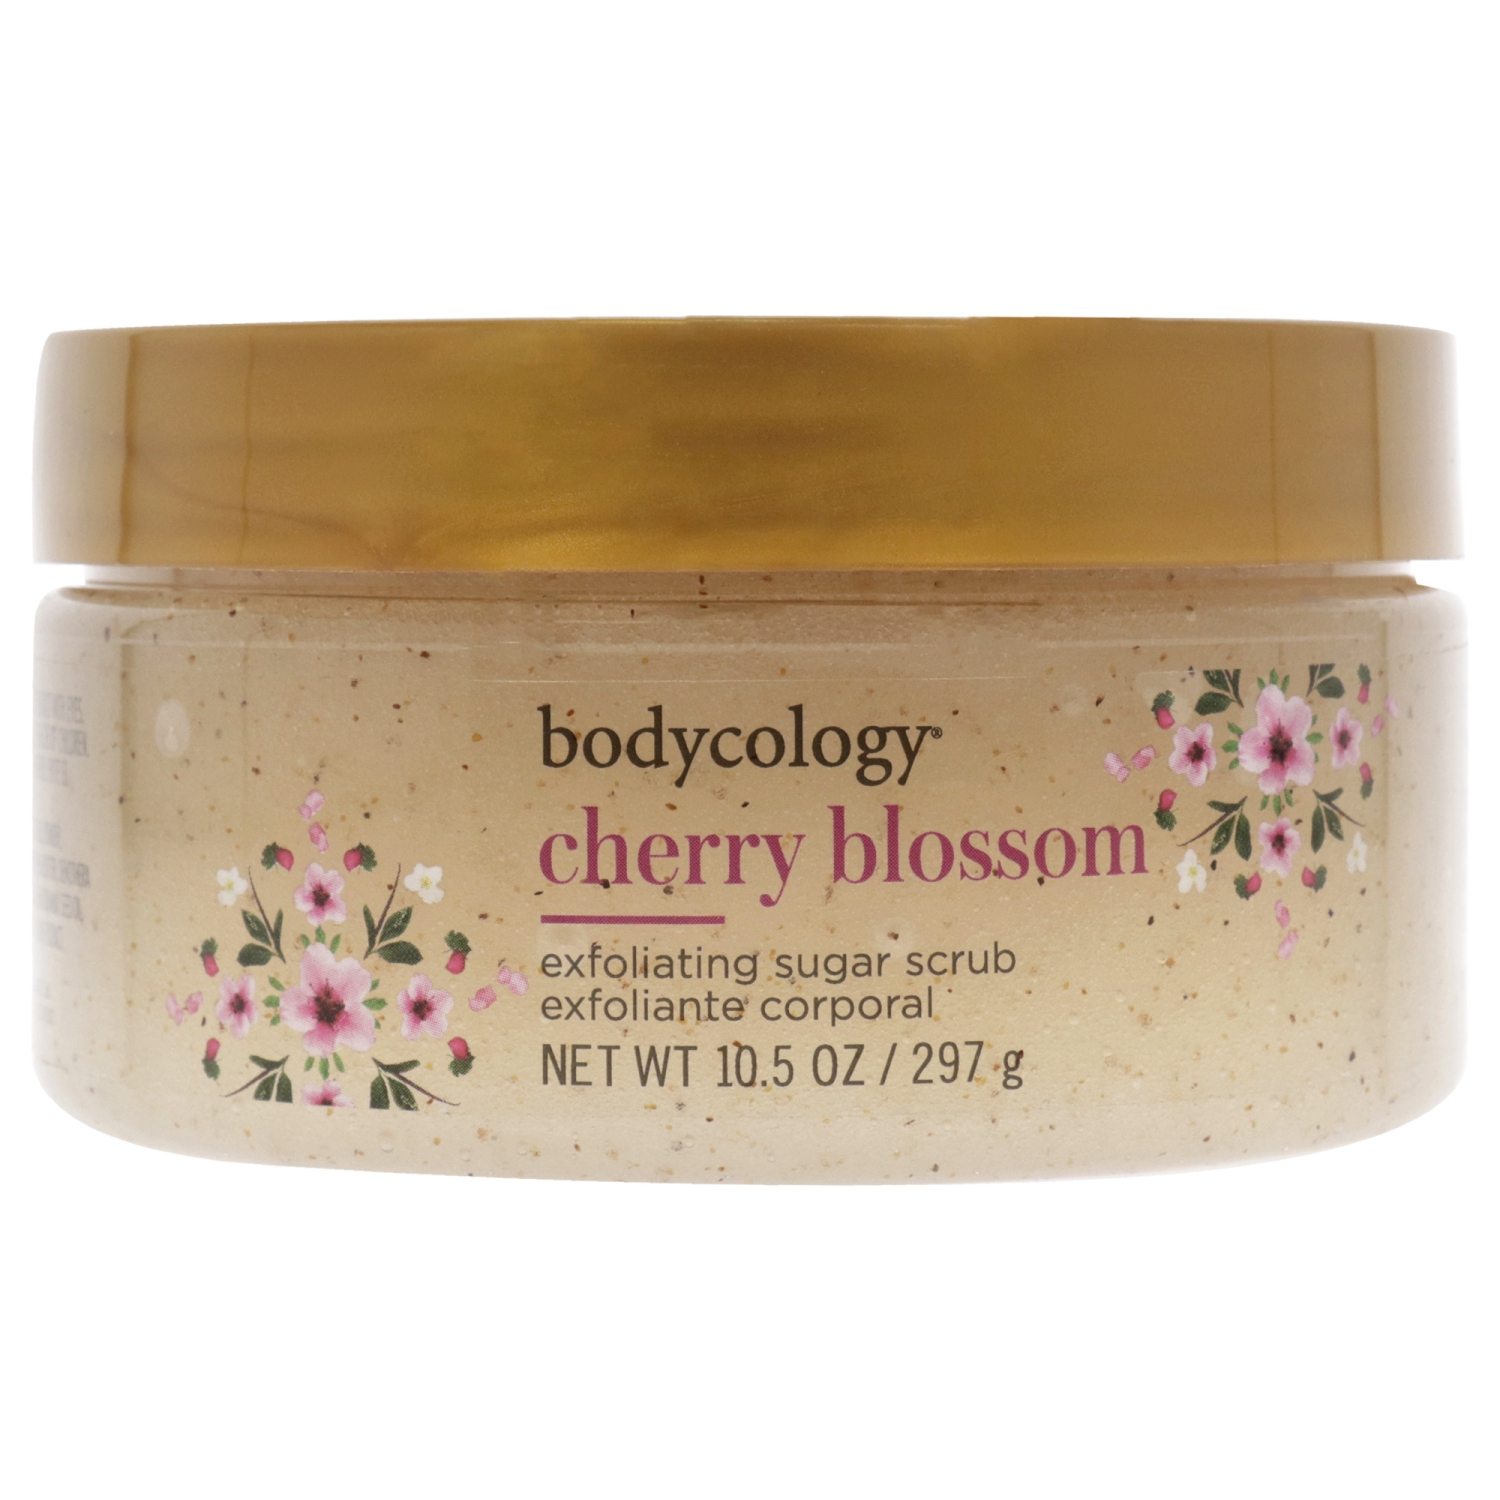 Cherry Blossom Exfoliating Sugar Scrub by Bodycology for Women - 10.5 oz Scrub